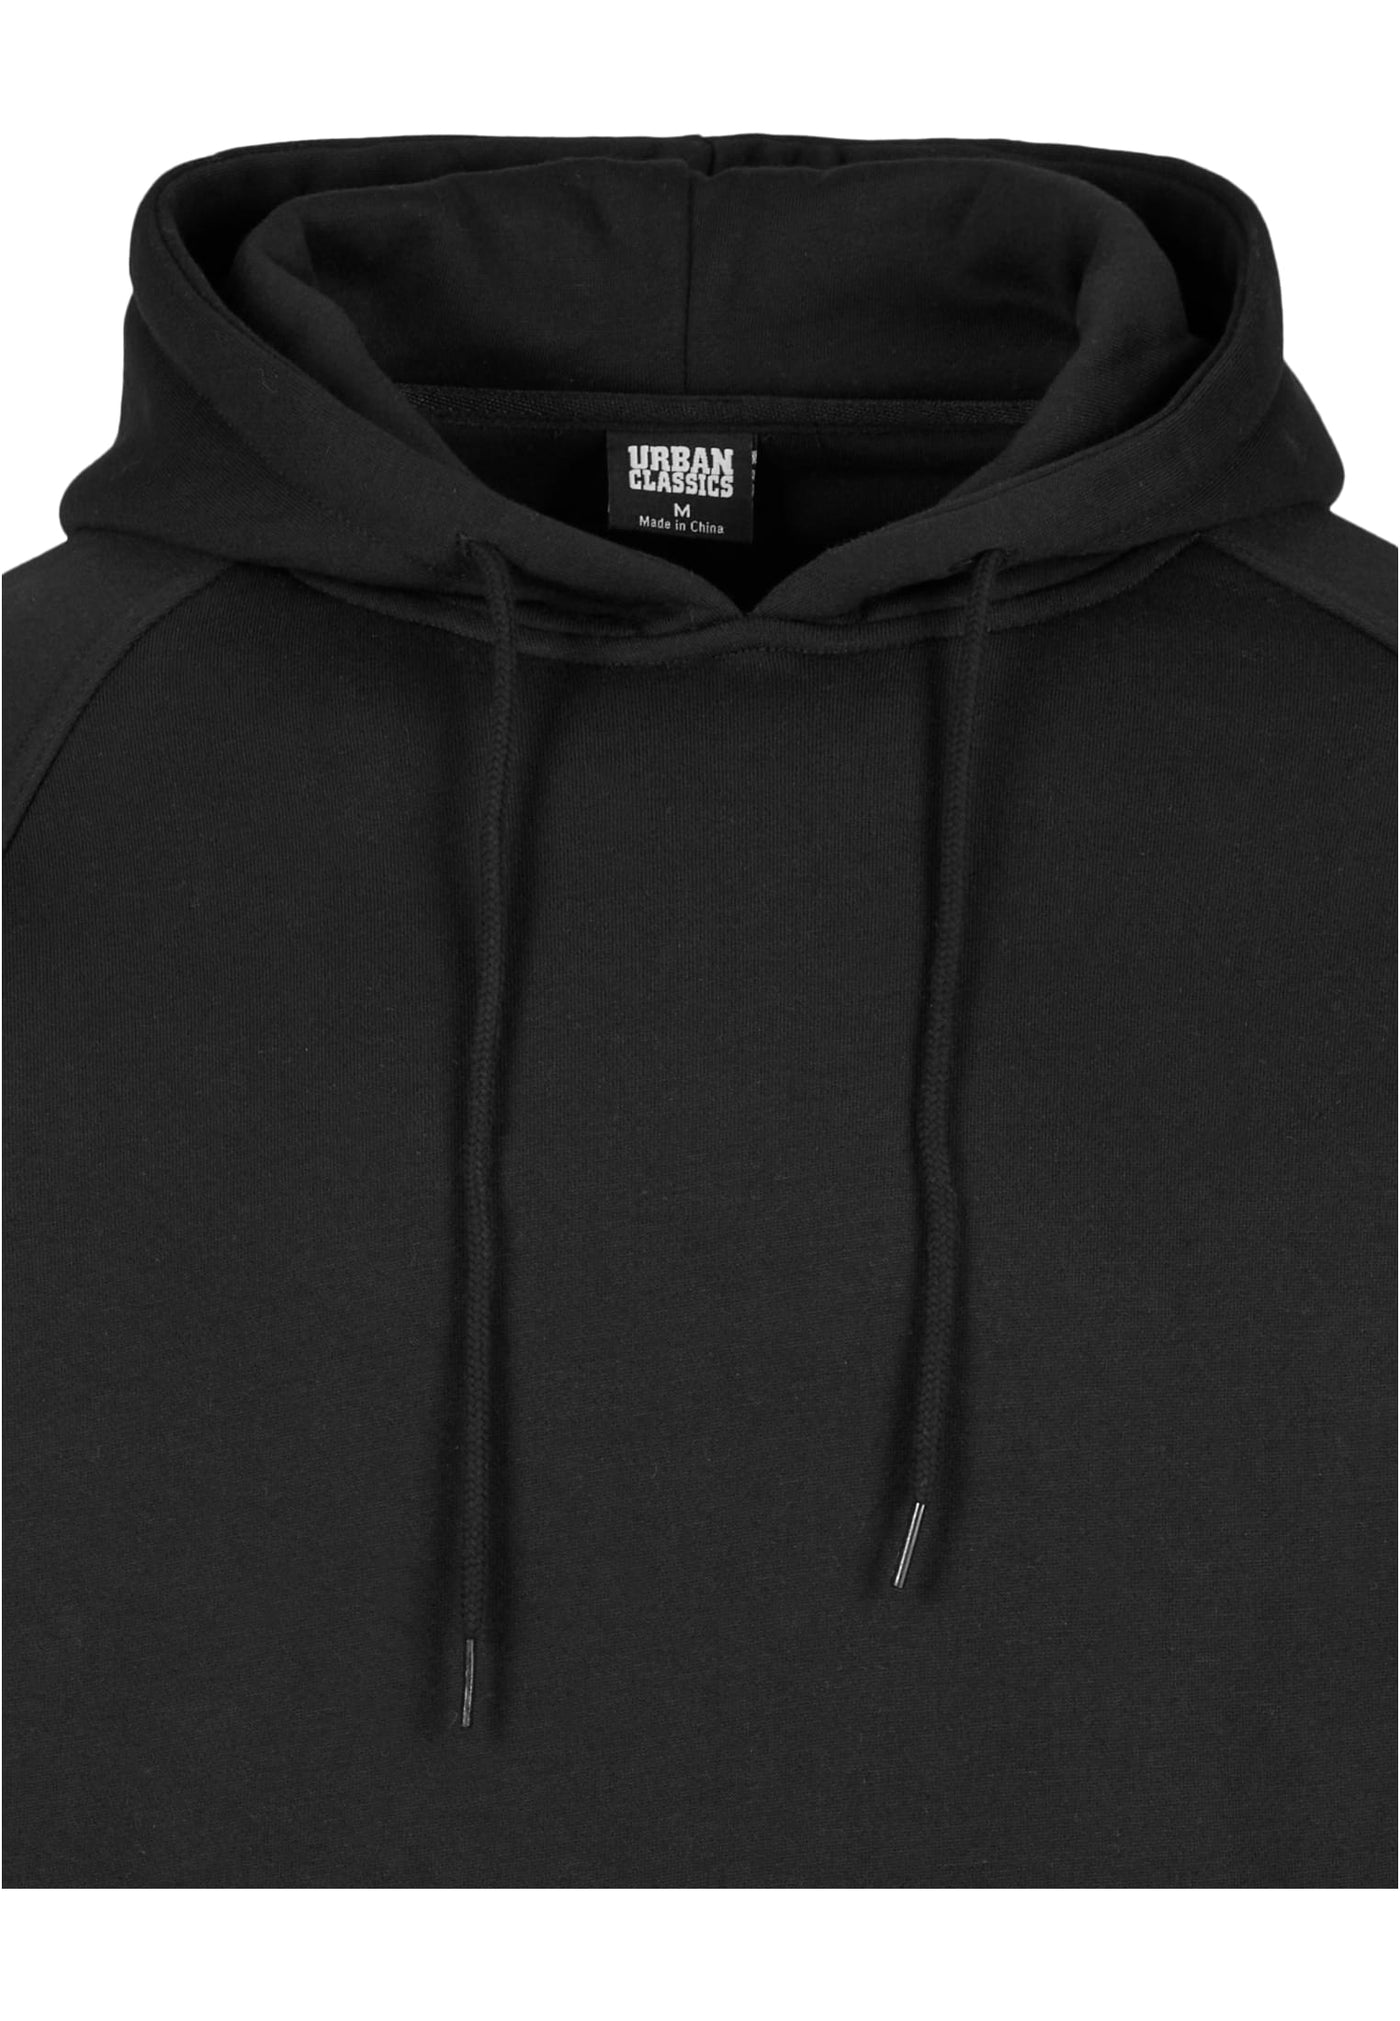 Urban Classics blank hoody black - Shop-Tetuan